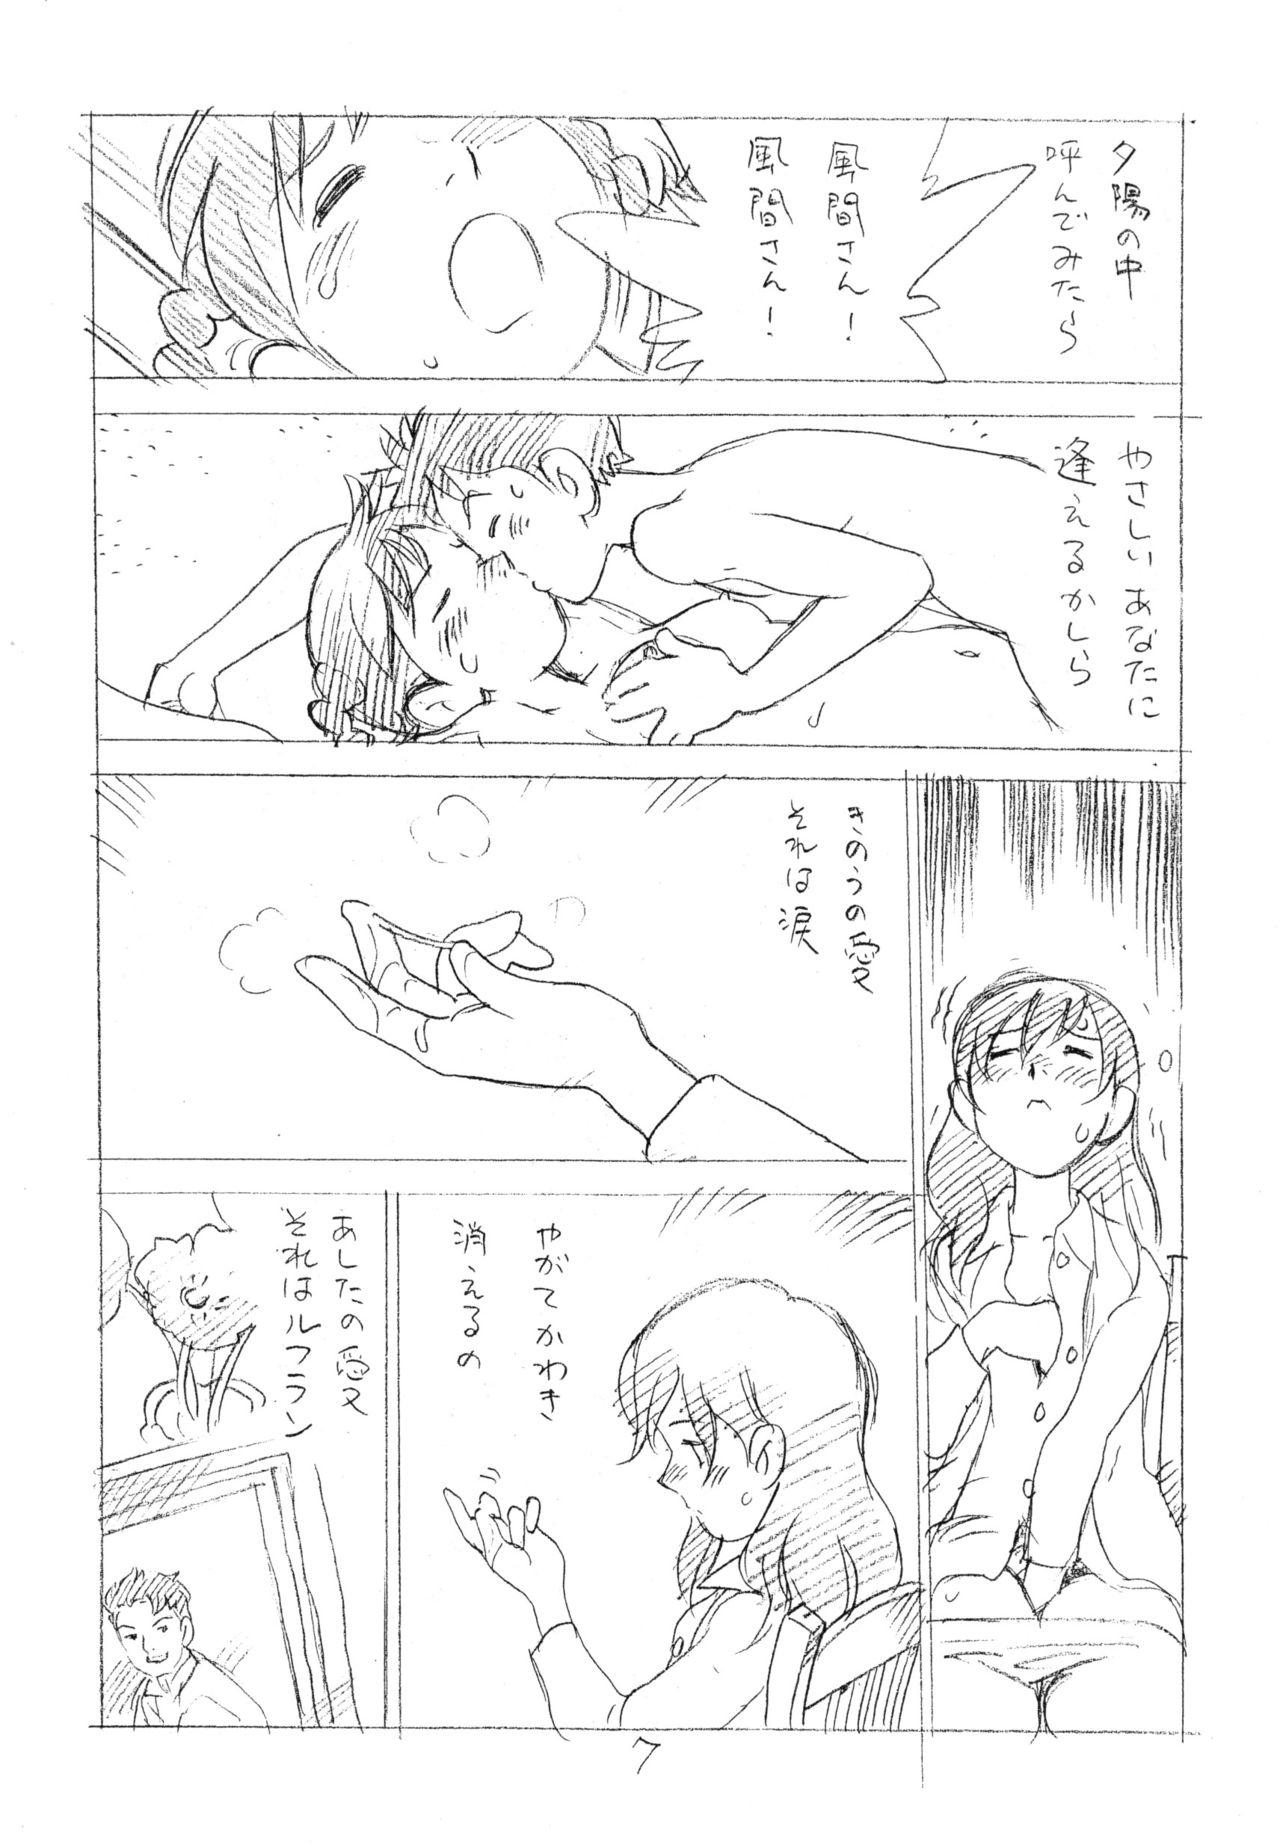 Daring Ashita ga Arusa. Enpitsu Kaki Eromanga 2012 Natsu Facials - Page 6